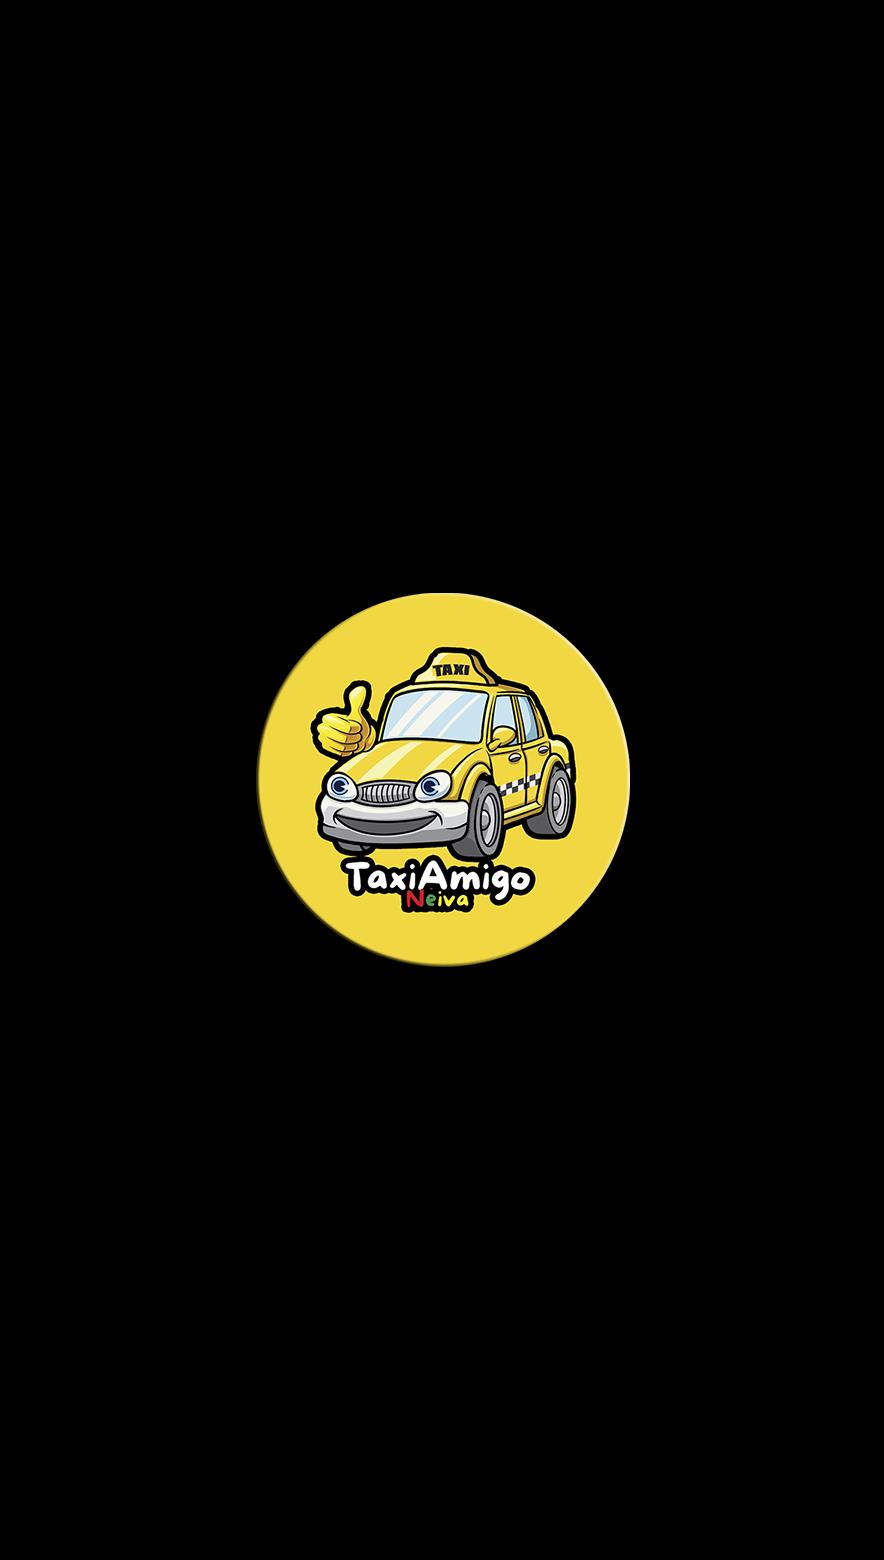 Descarga de APK de Taxi Amigo Neiva para Android